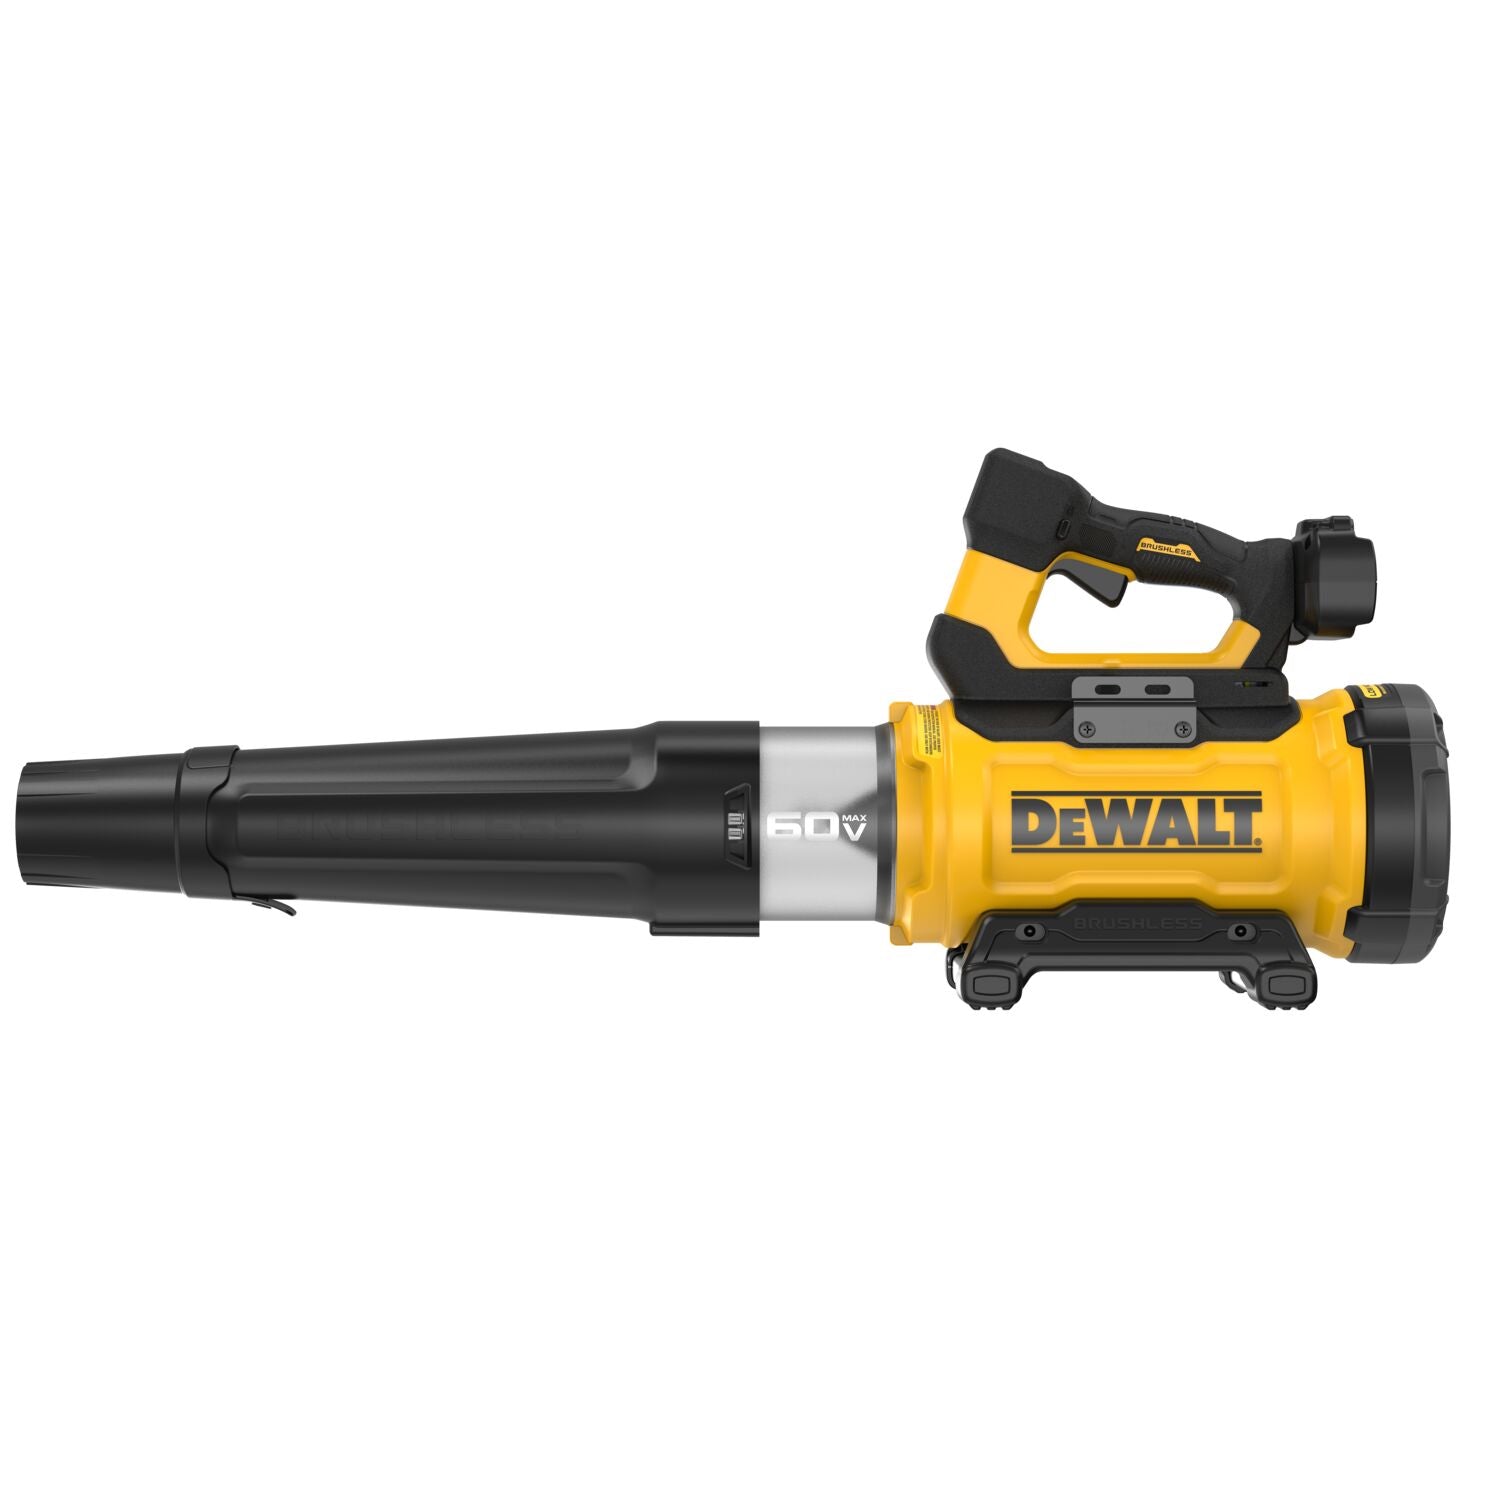 DEWALT DCBL777B 60V MAX* High Power Brushless Blower - Tool Only